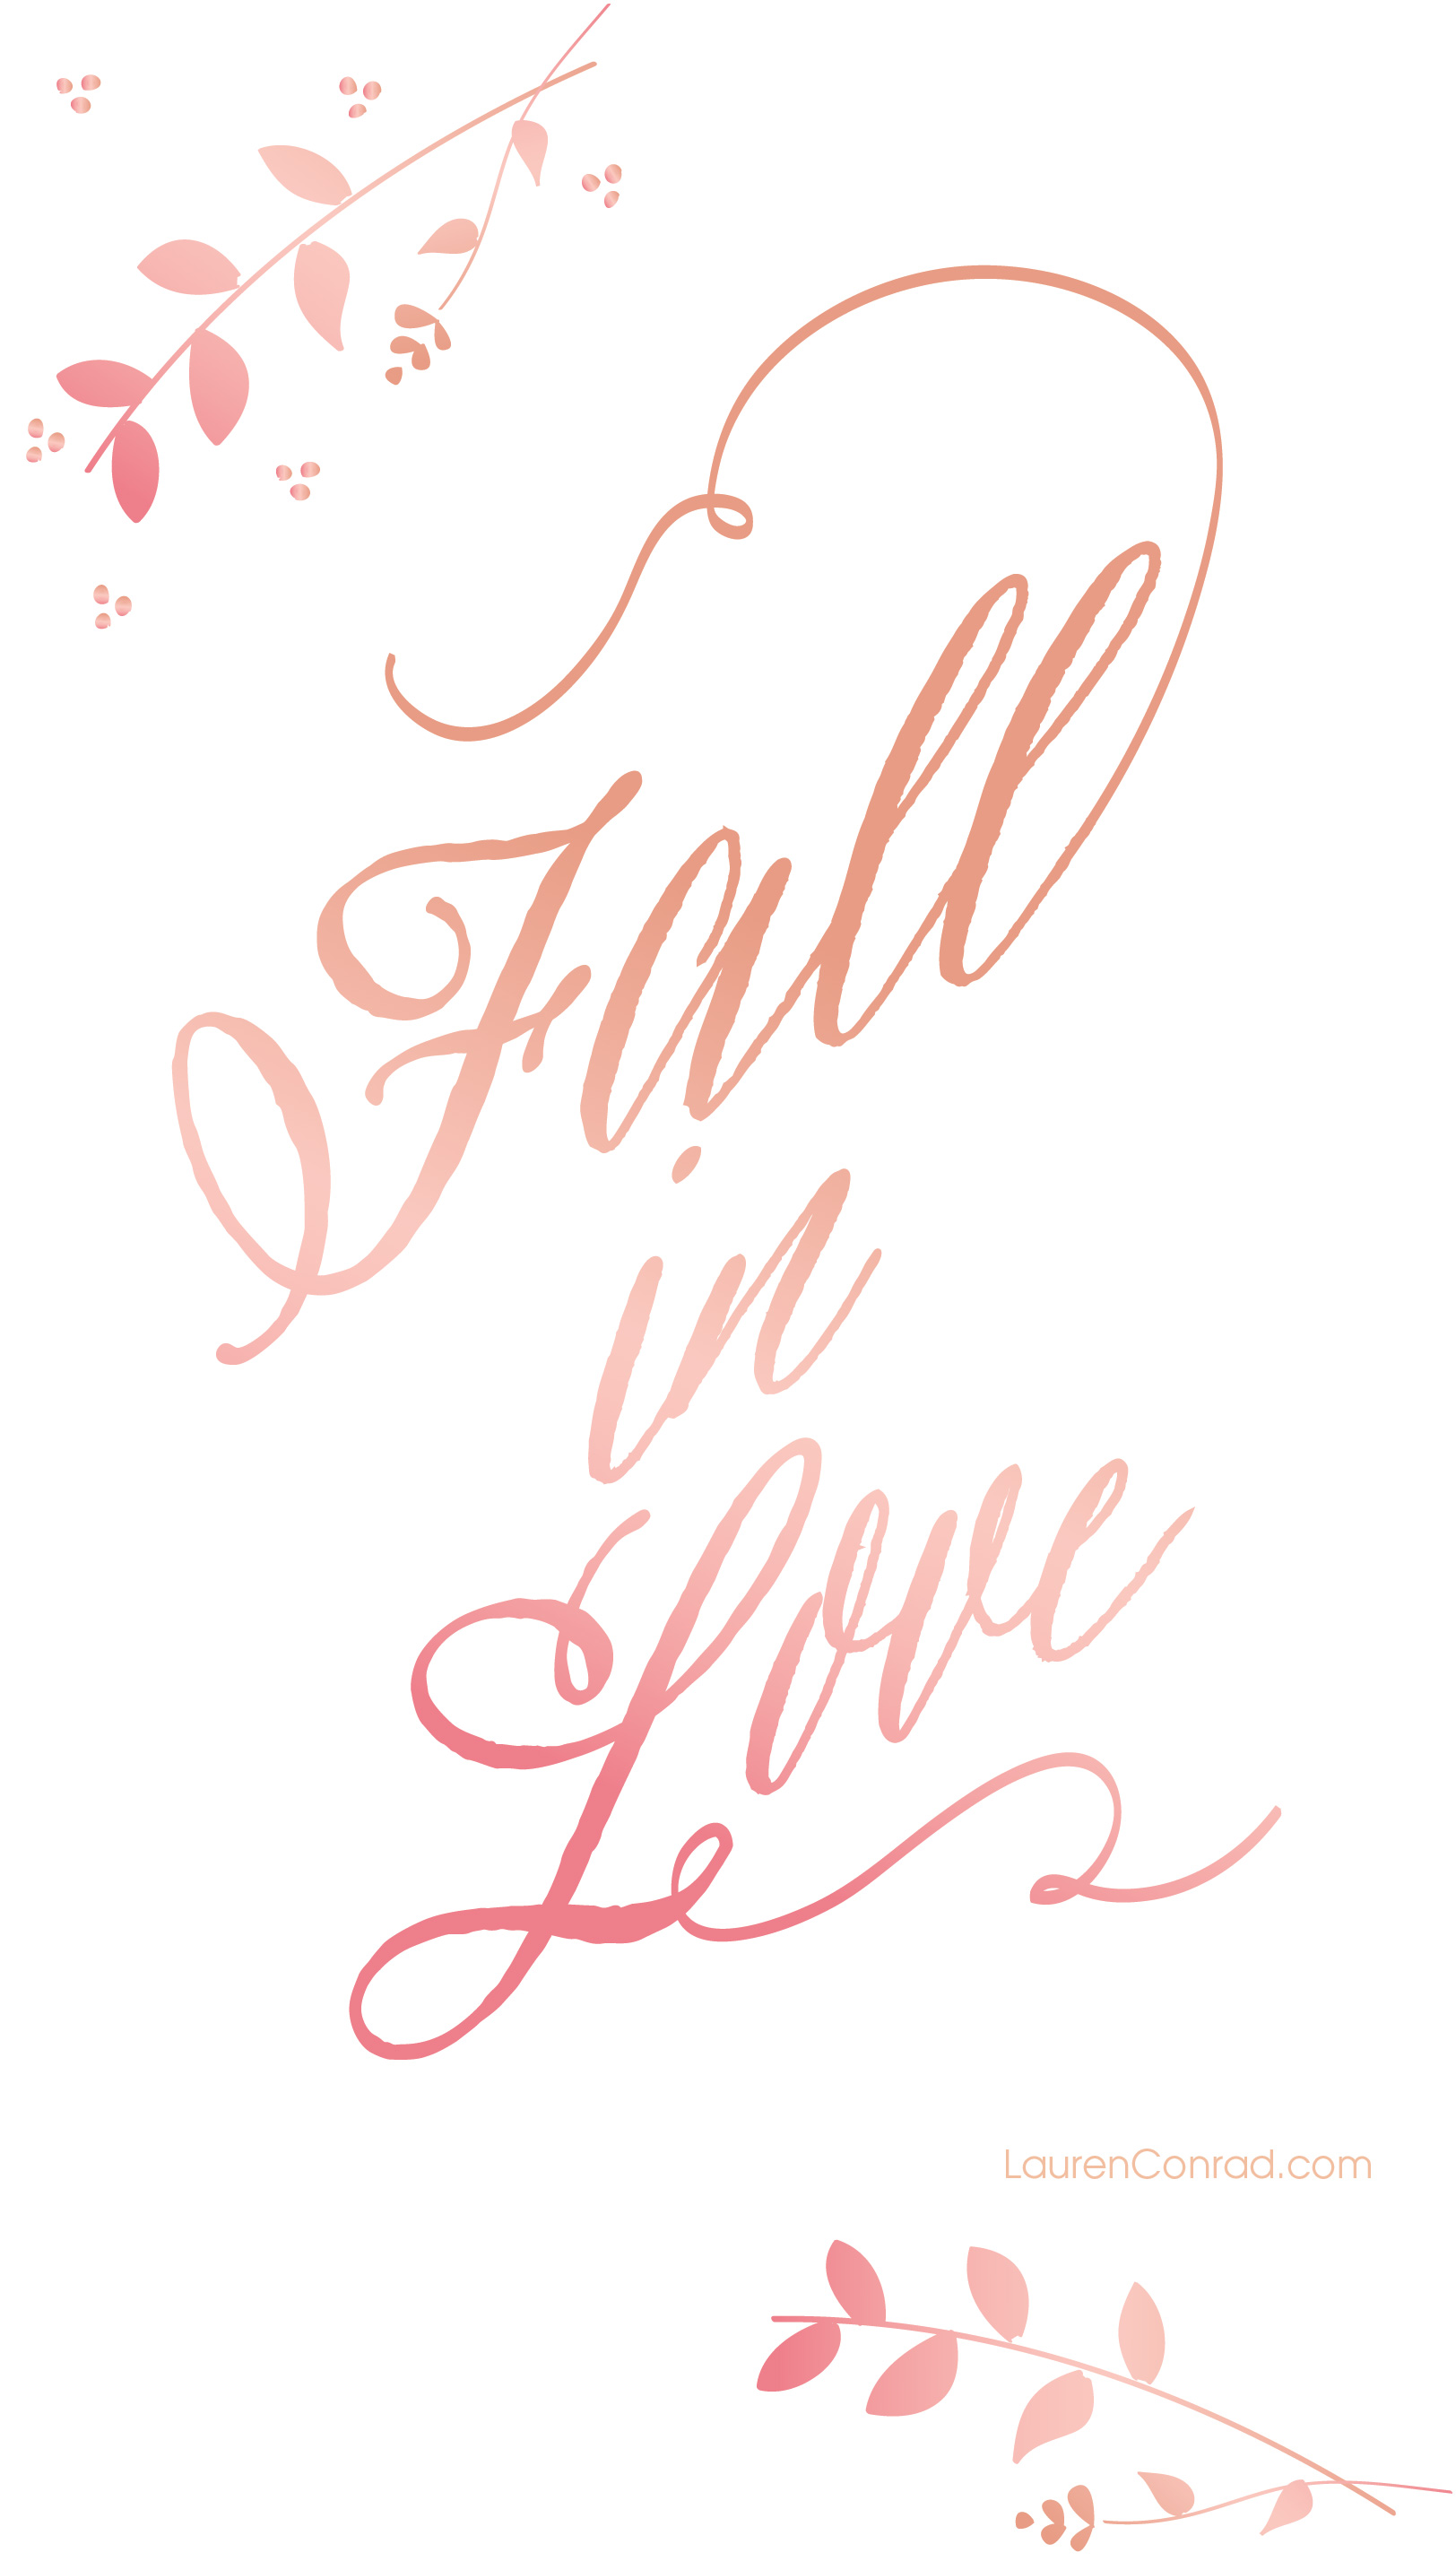 Fall In Love - HD Wallpaper 